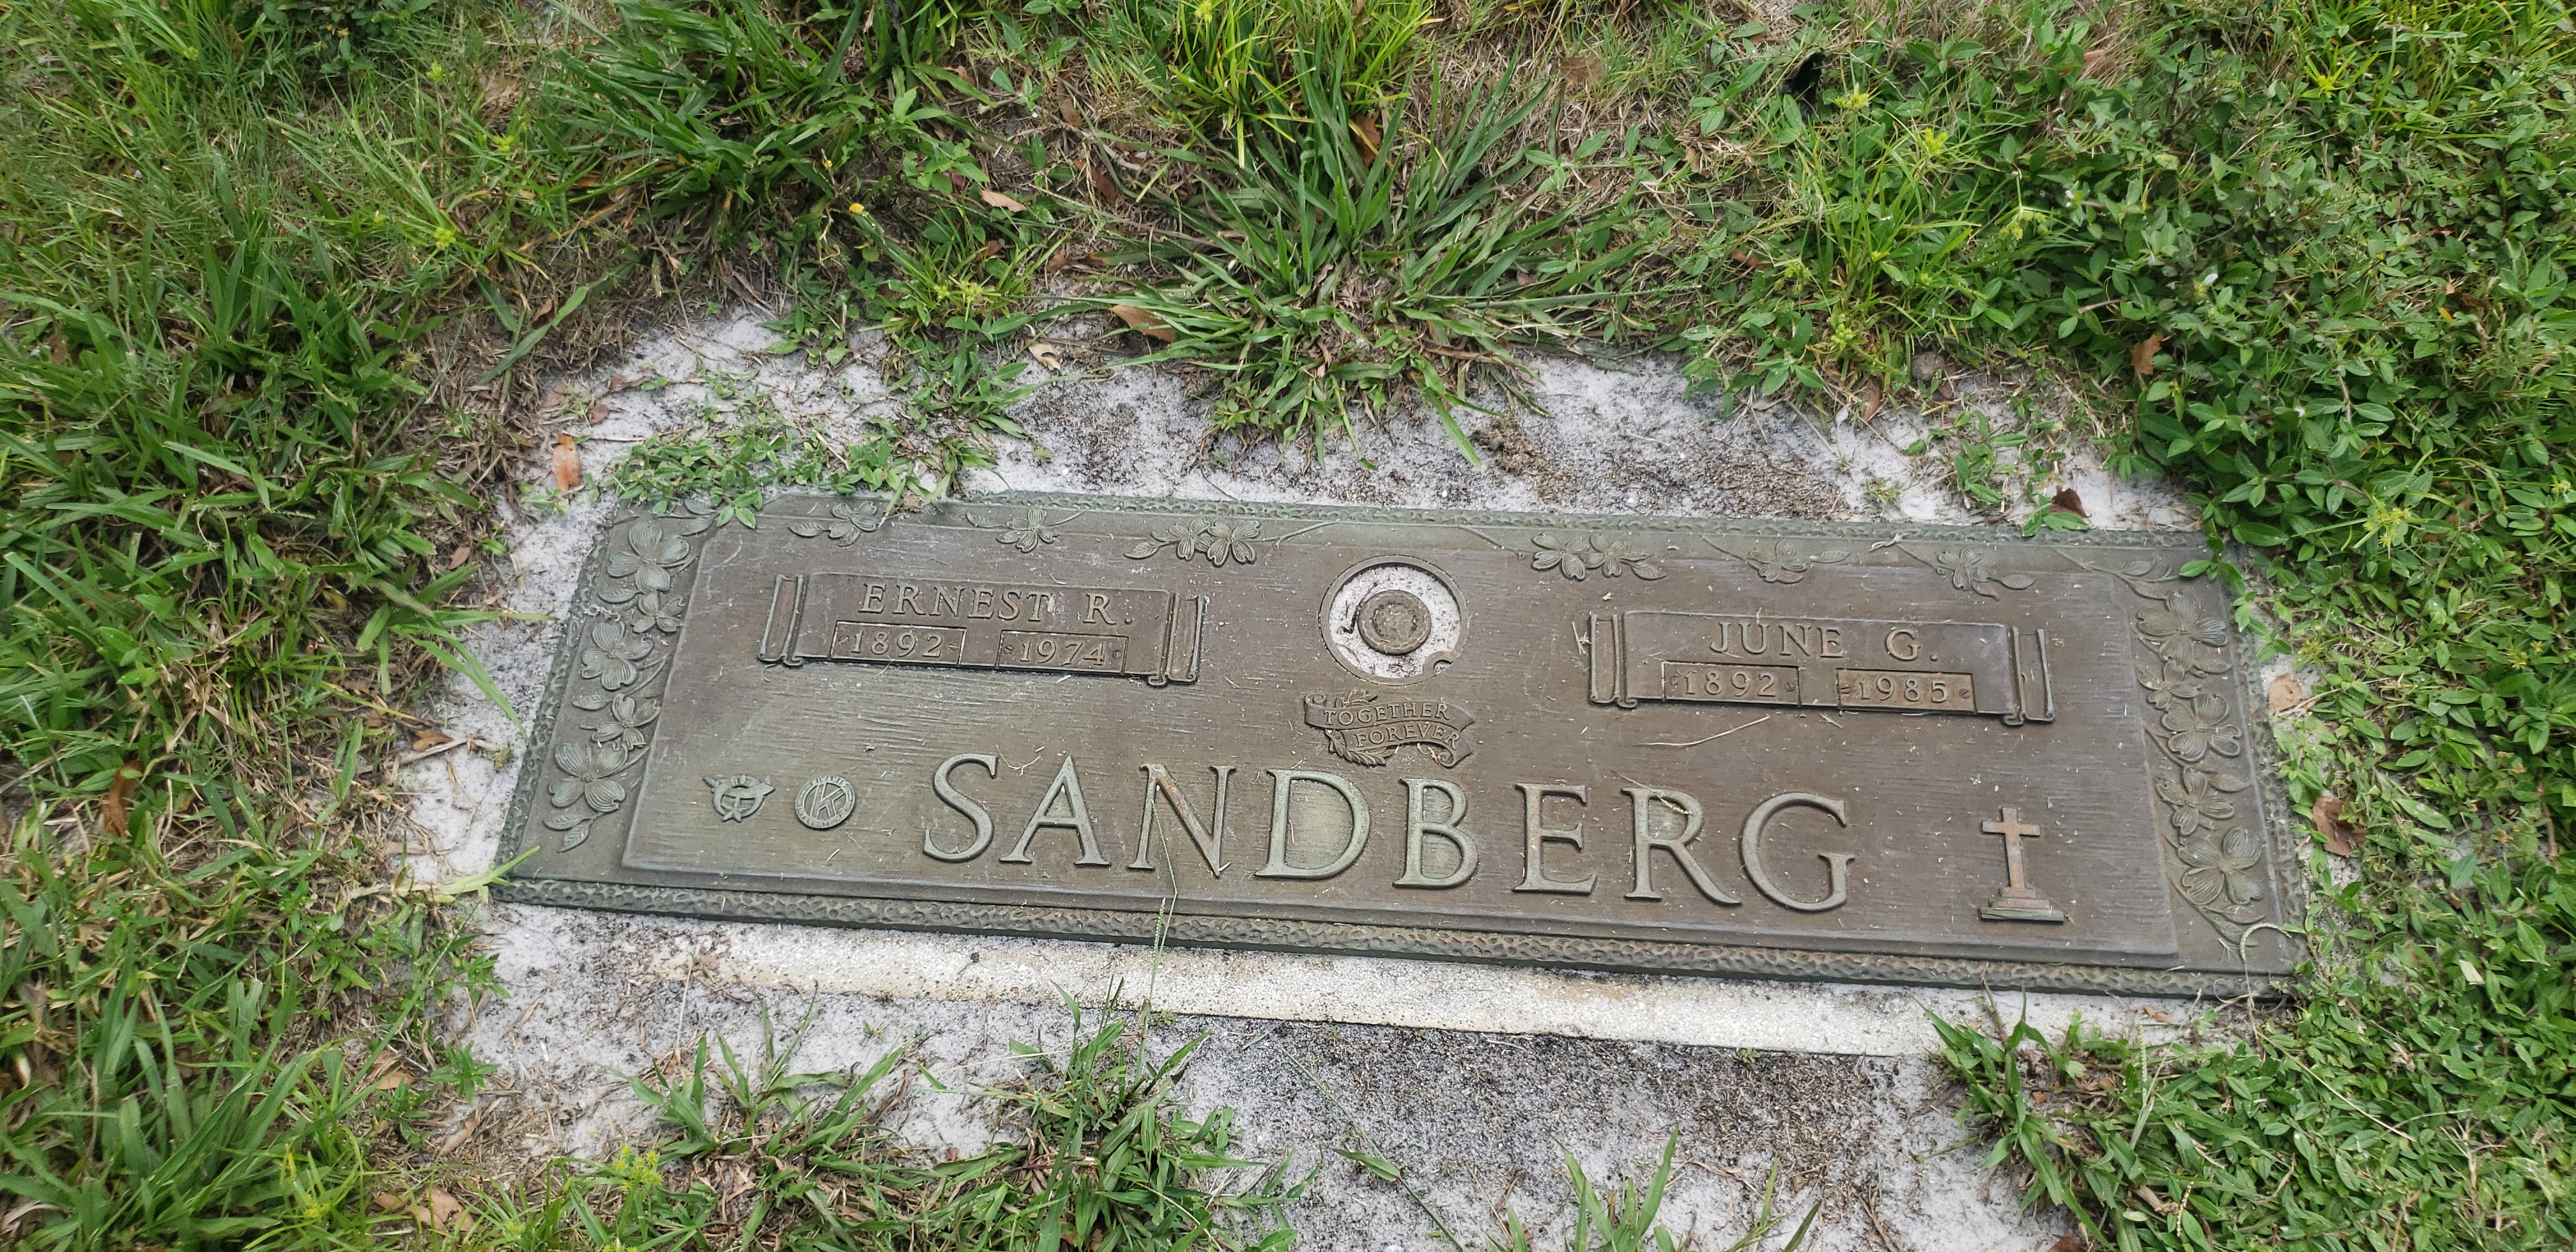 June G Sandberg